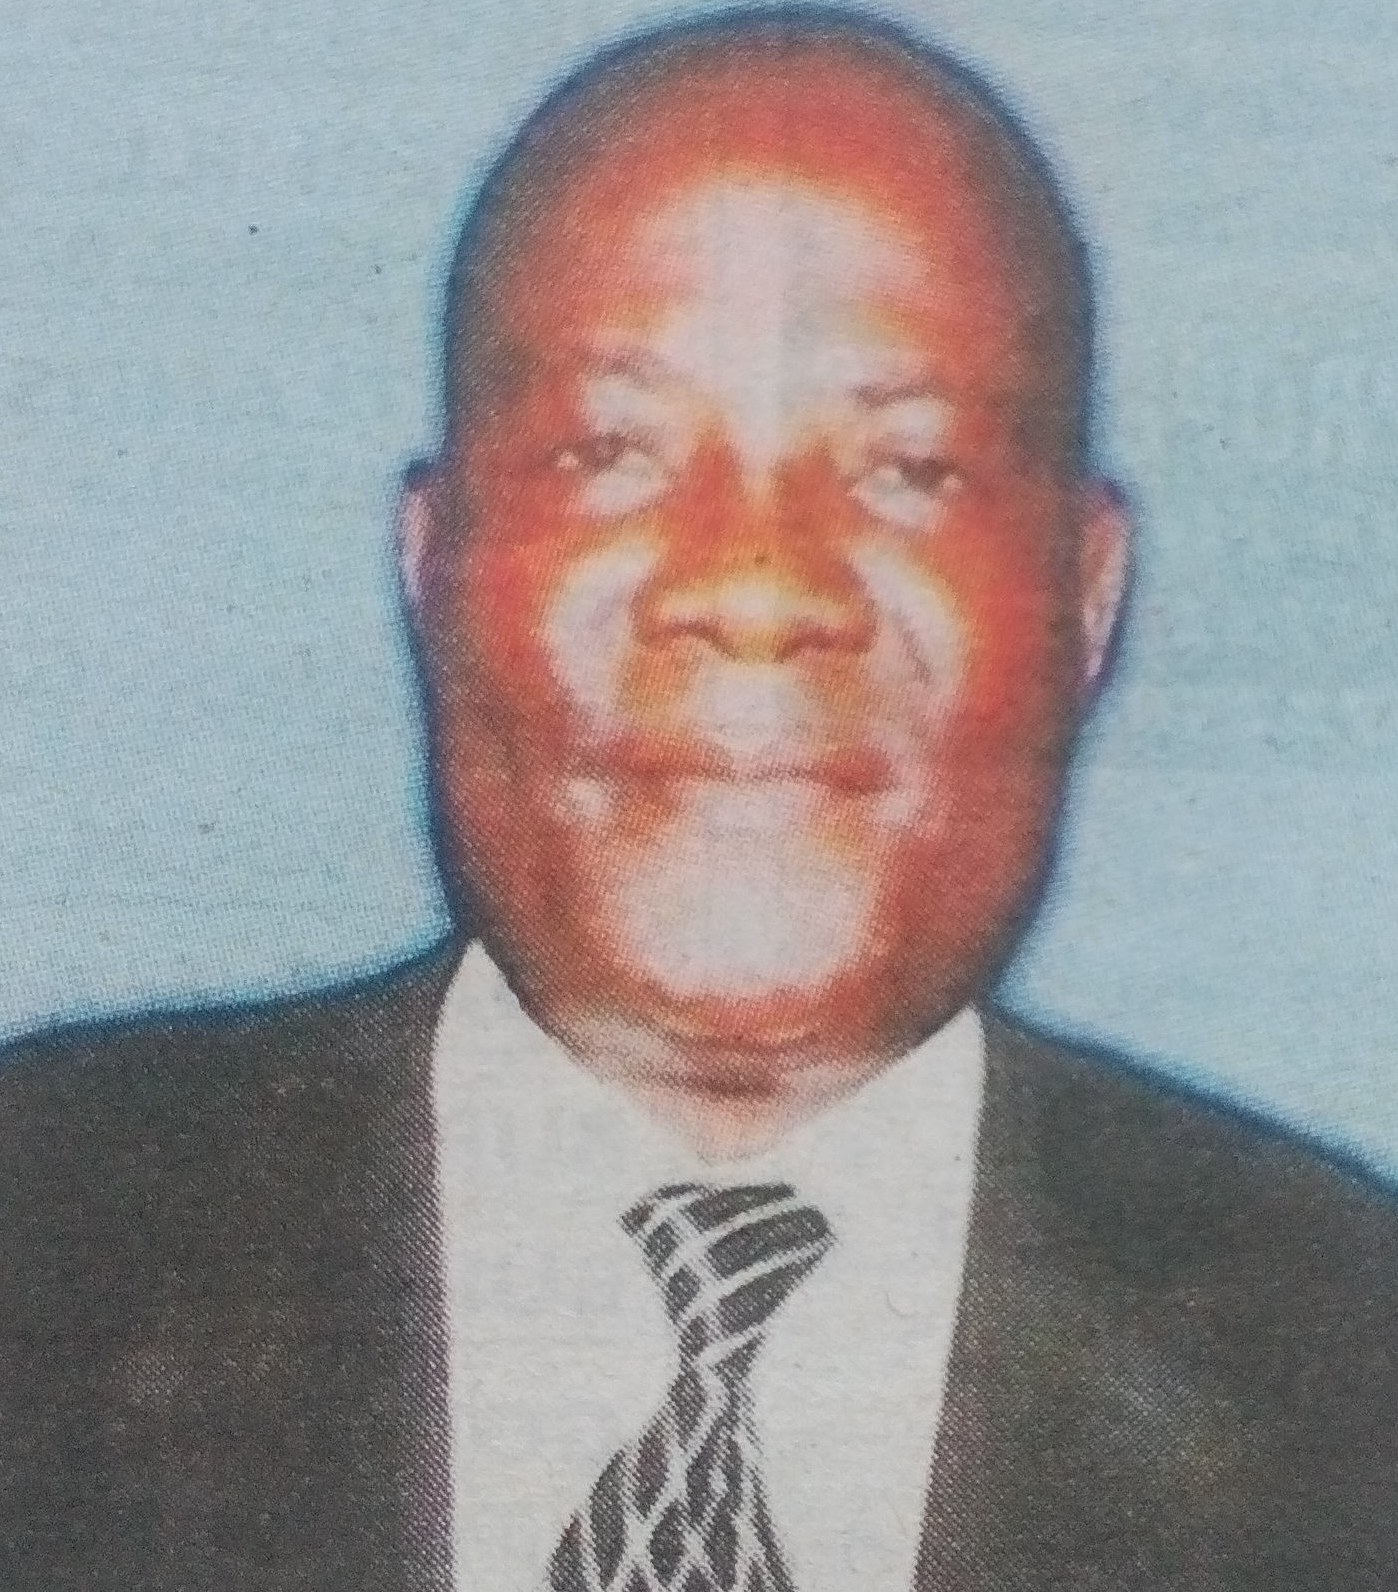 Obituary Image of Richard Tom Okelo Nyamwalo